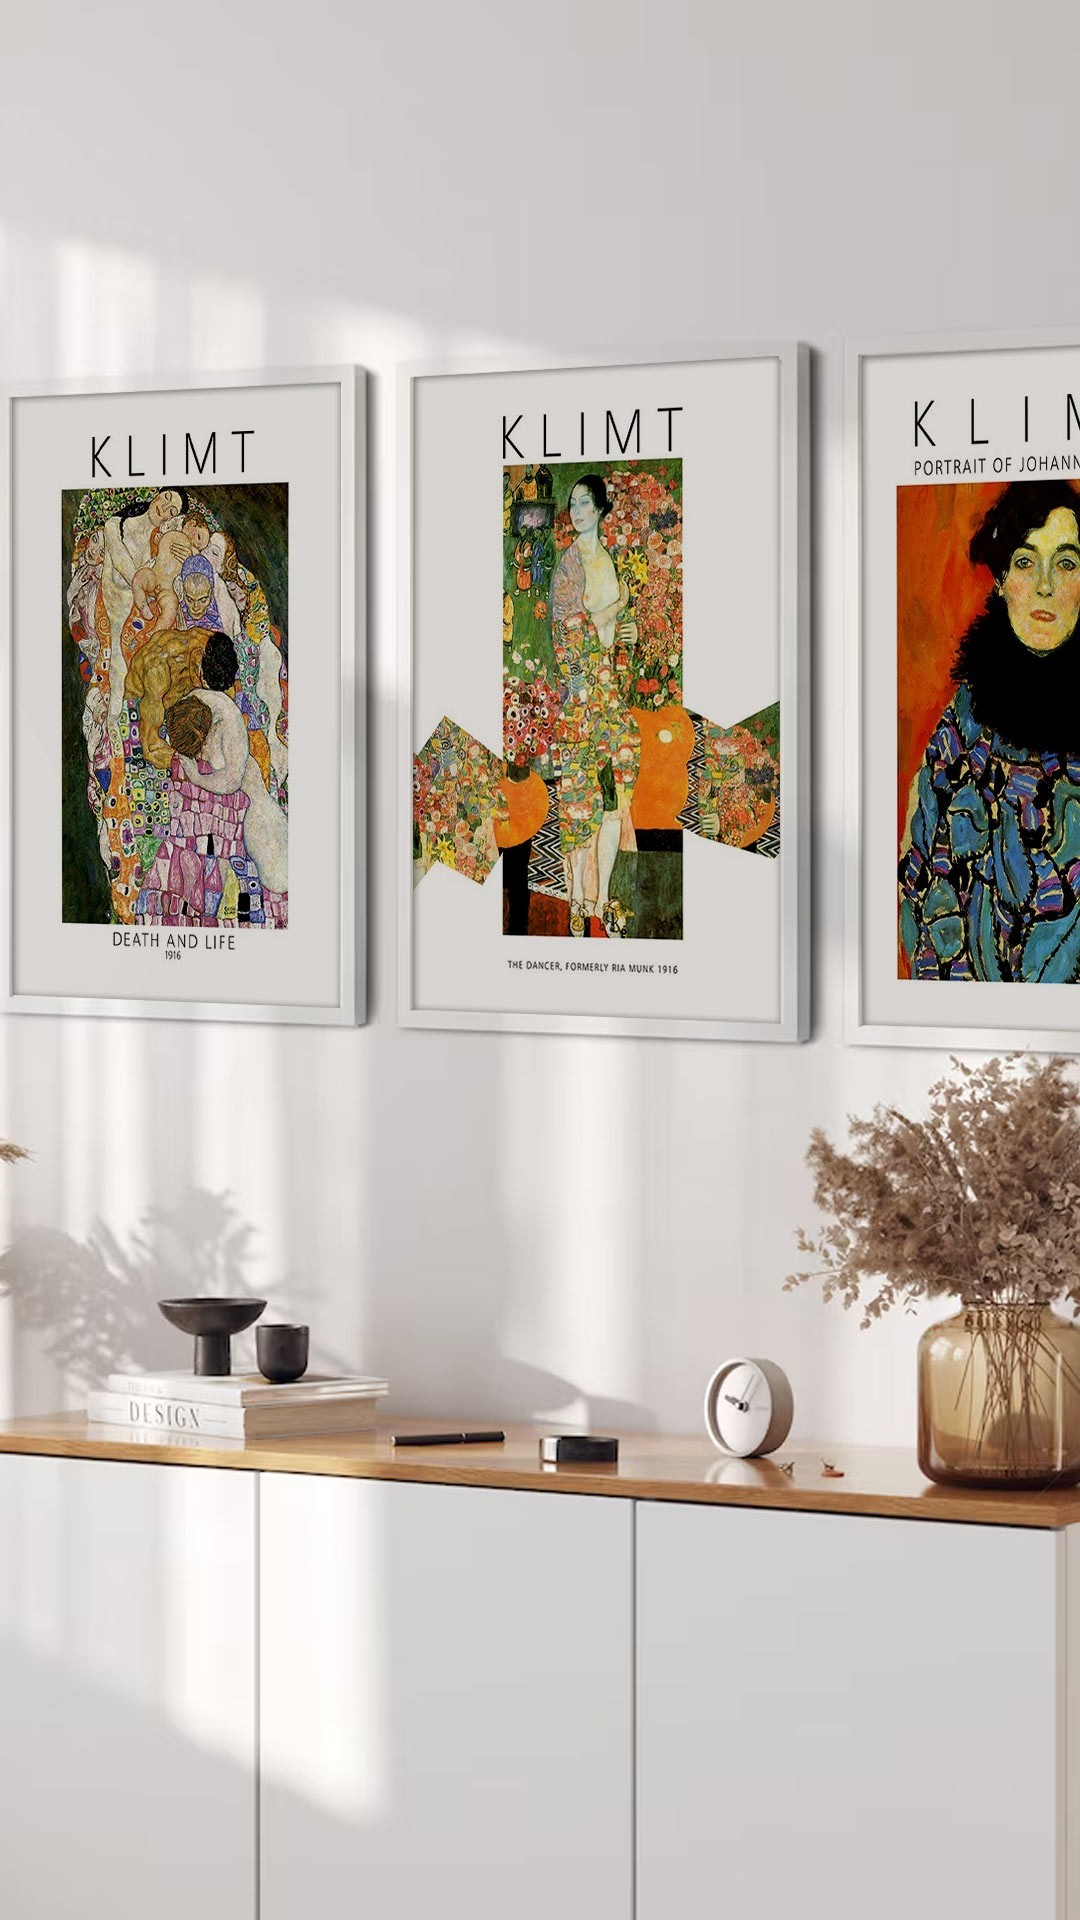 Αφίσες-Poster με έργα του Klimt